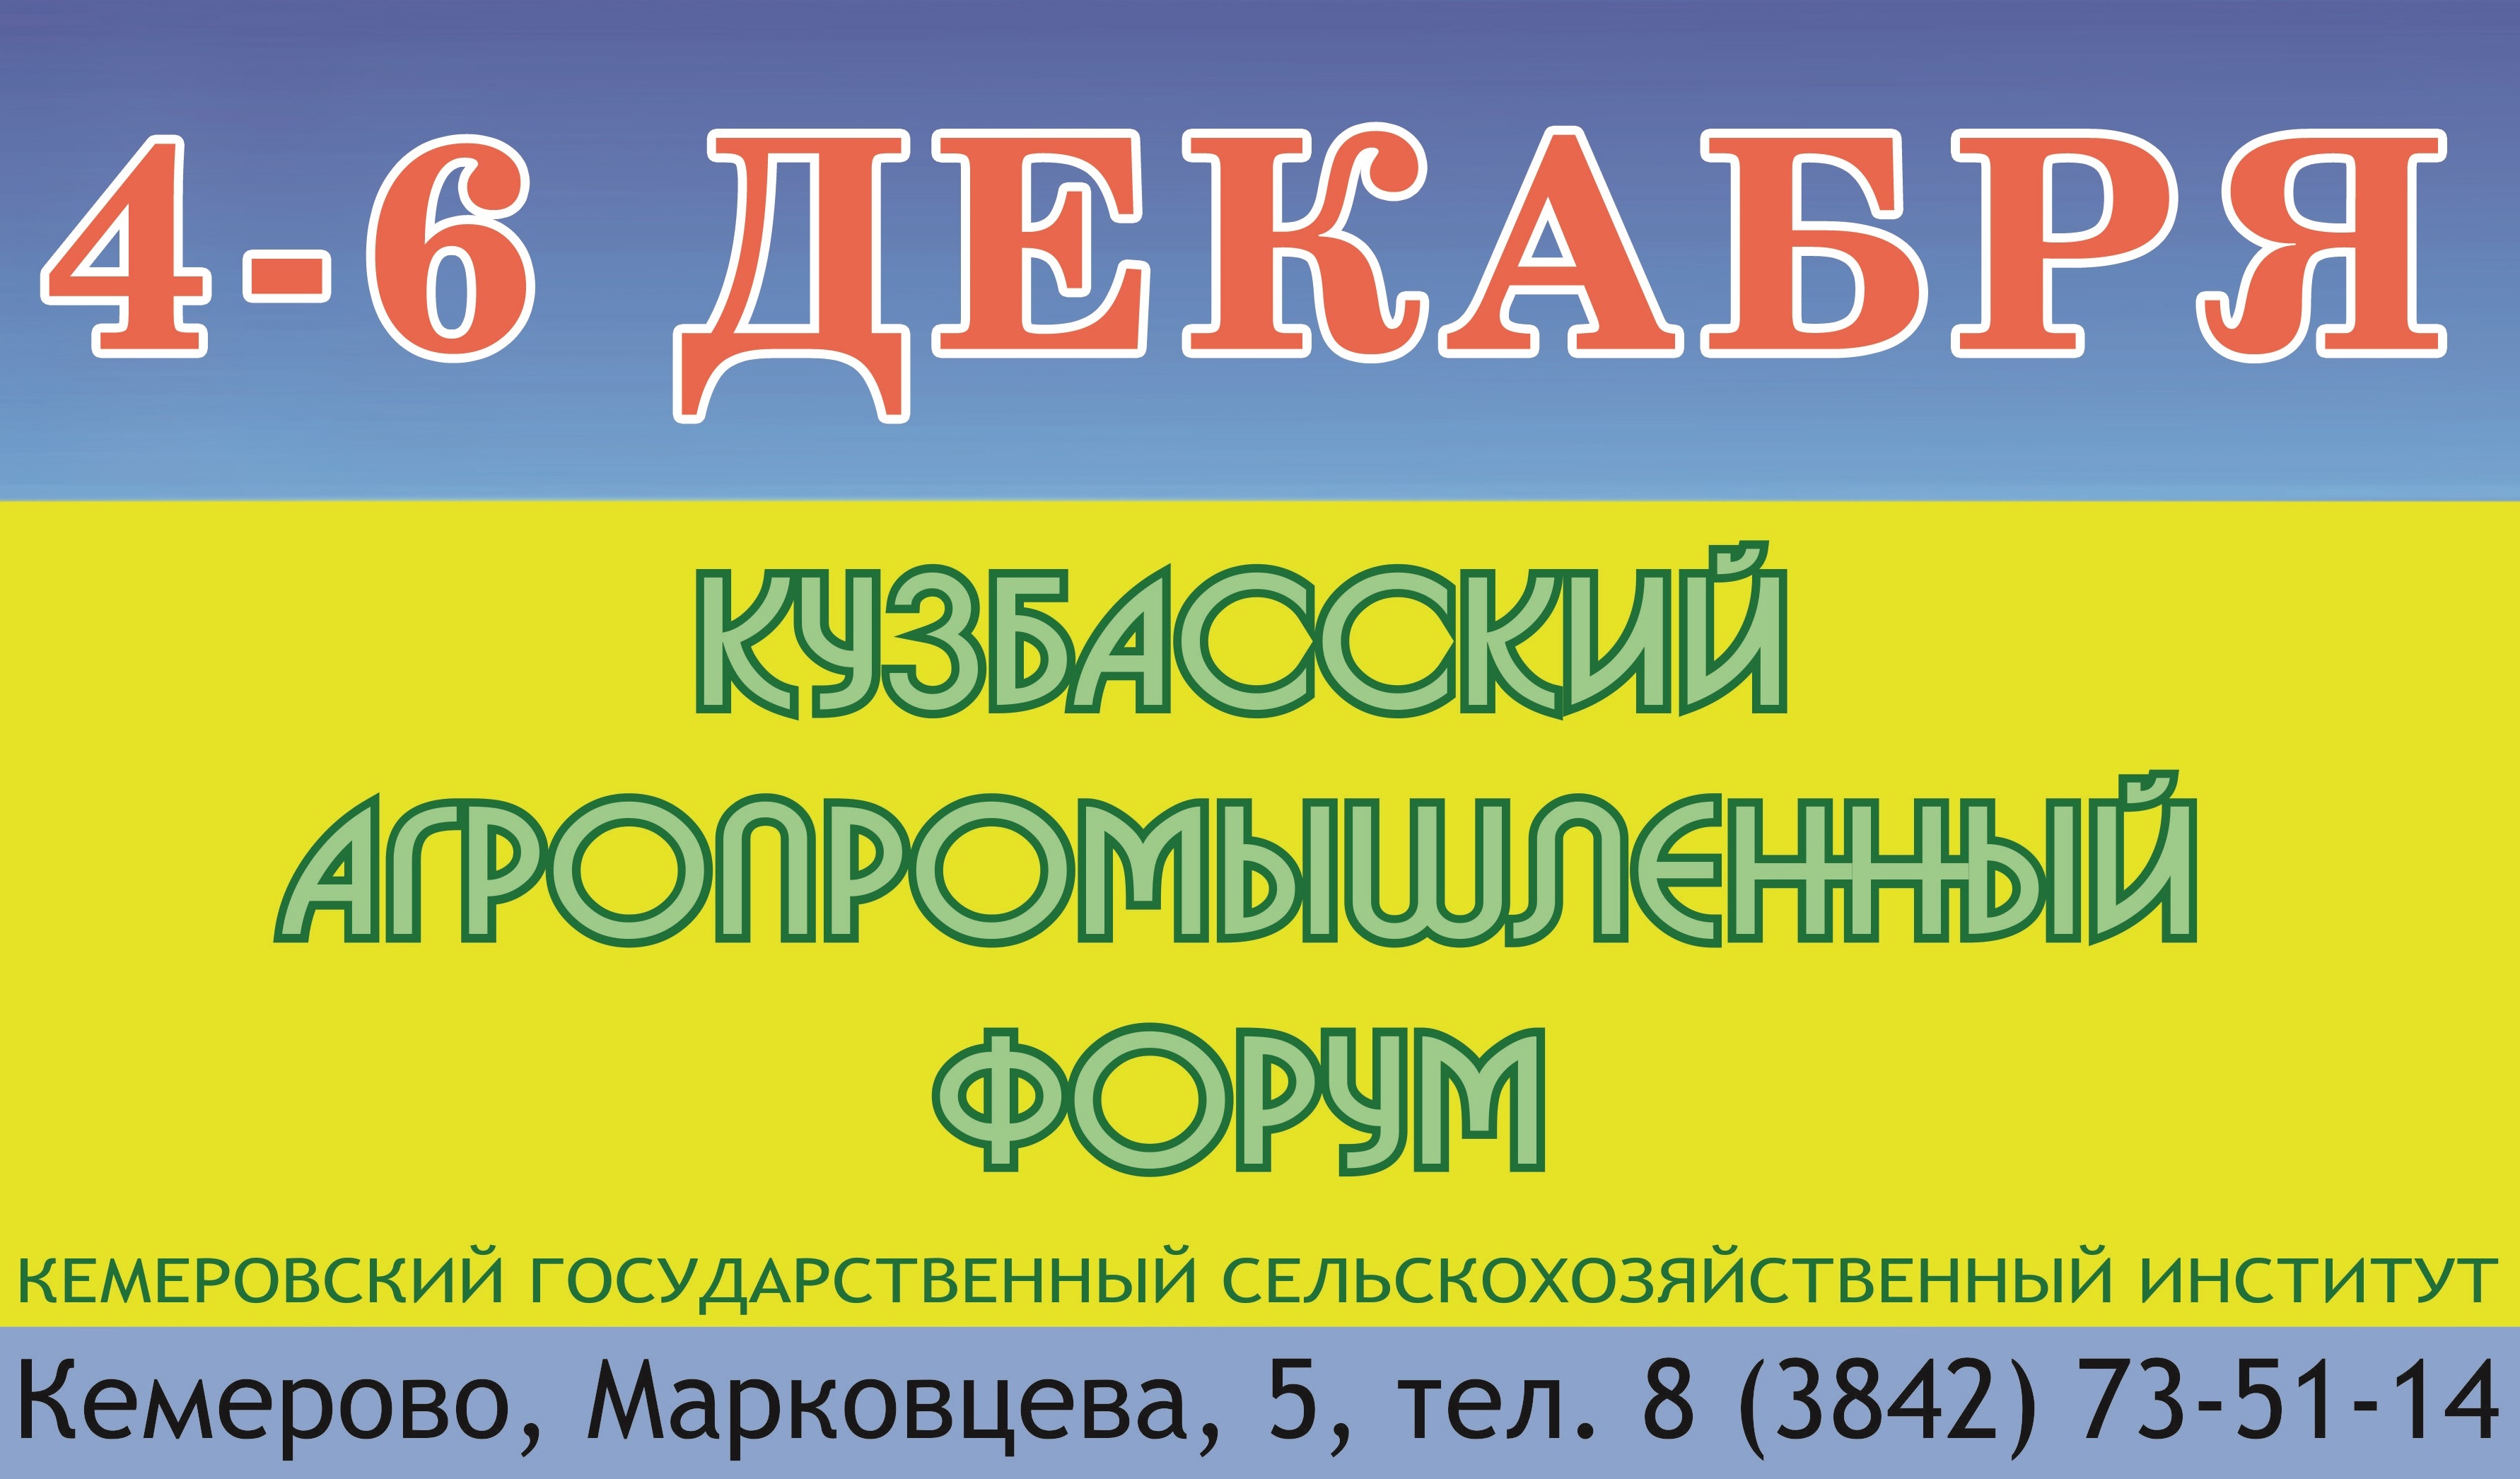 В Кемеровскойм ГСХИ состоится Кузбасский агропромышленный форум